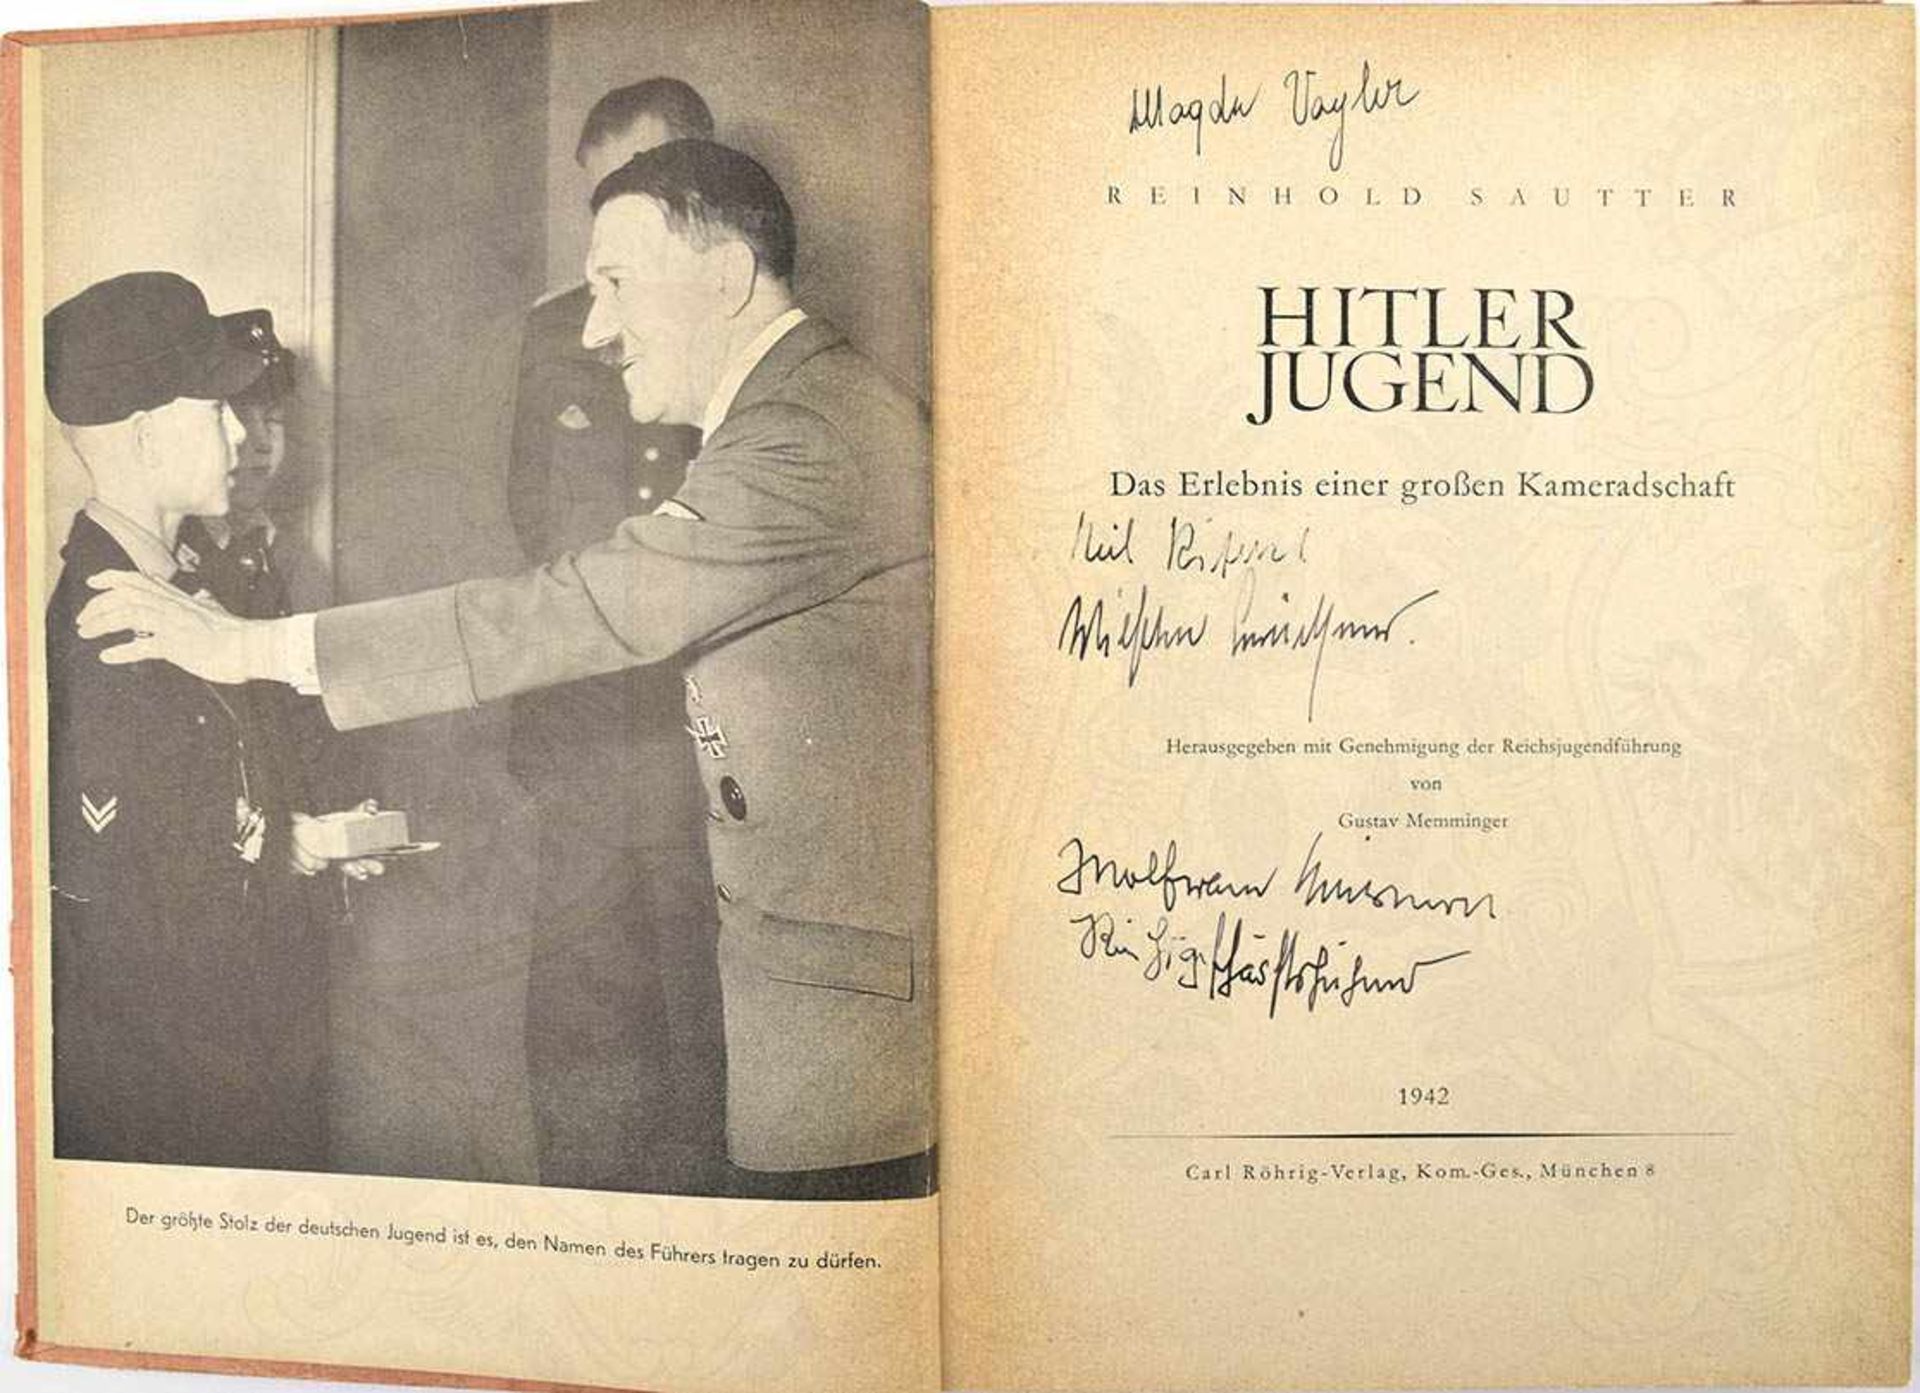 HITLER JUGEND, „Das Erlebnis einer großen Kameradschaft“, 1942, 319 S., zahlr. Abb., Titelblatt u. - Bild 2 aus 2